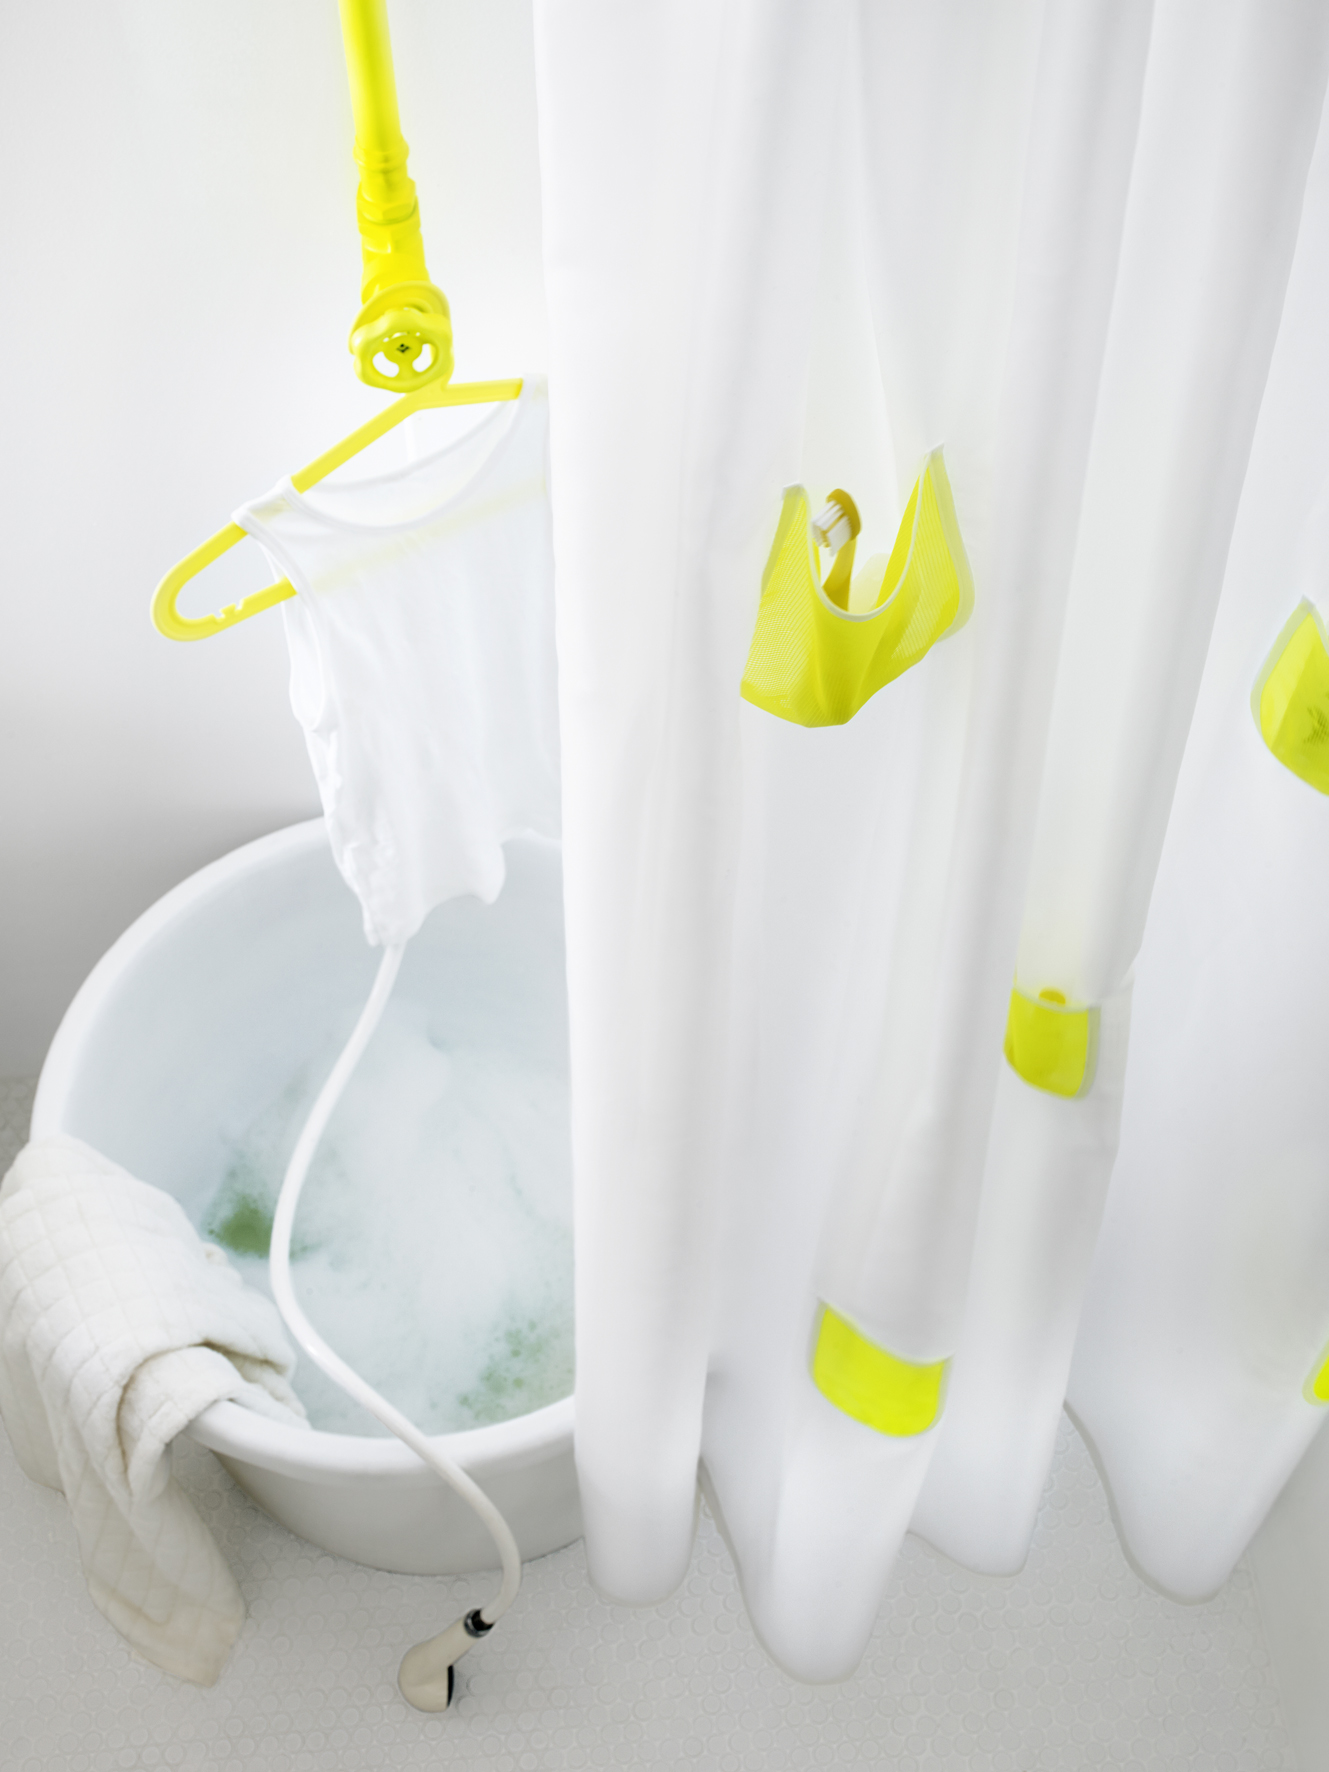 Badkamer opruimen met handige SPRUTT opbergers van IKEA